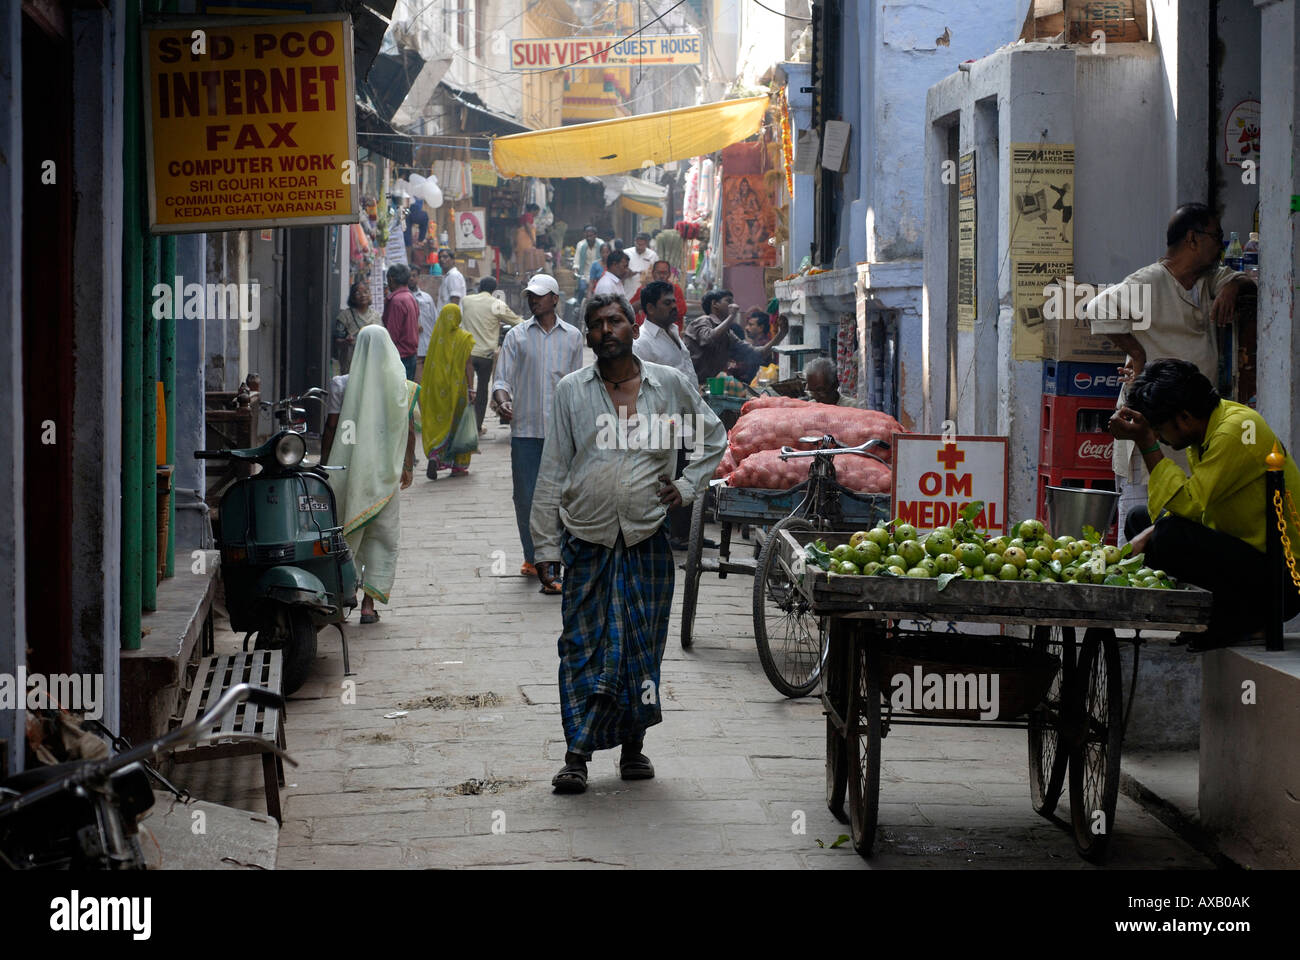 Vente de fruits et légumes à partir d'un chariot dans les rues étroites de la vieille ville de Varanasi Inde Banque D'Images